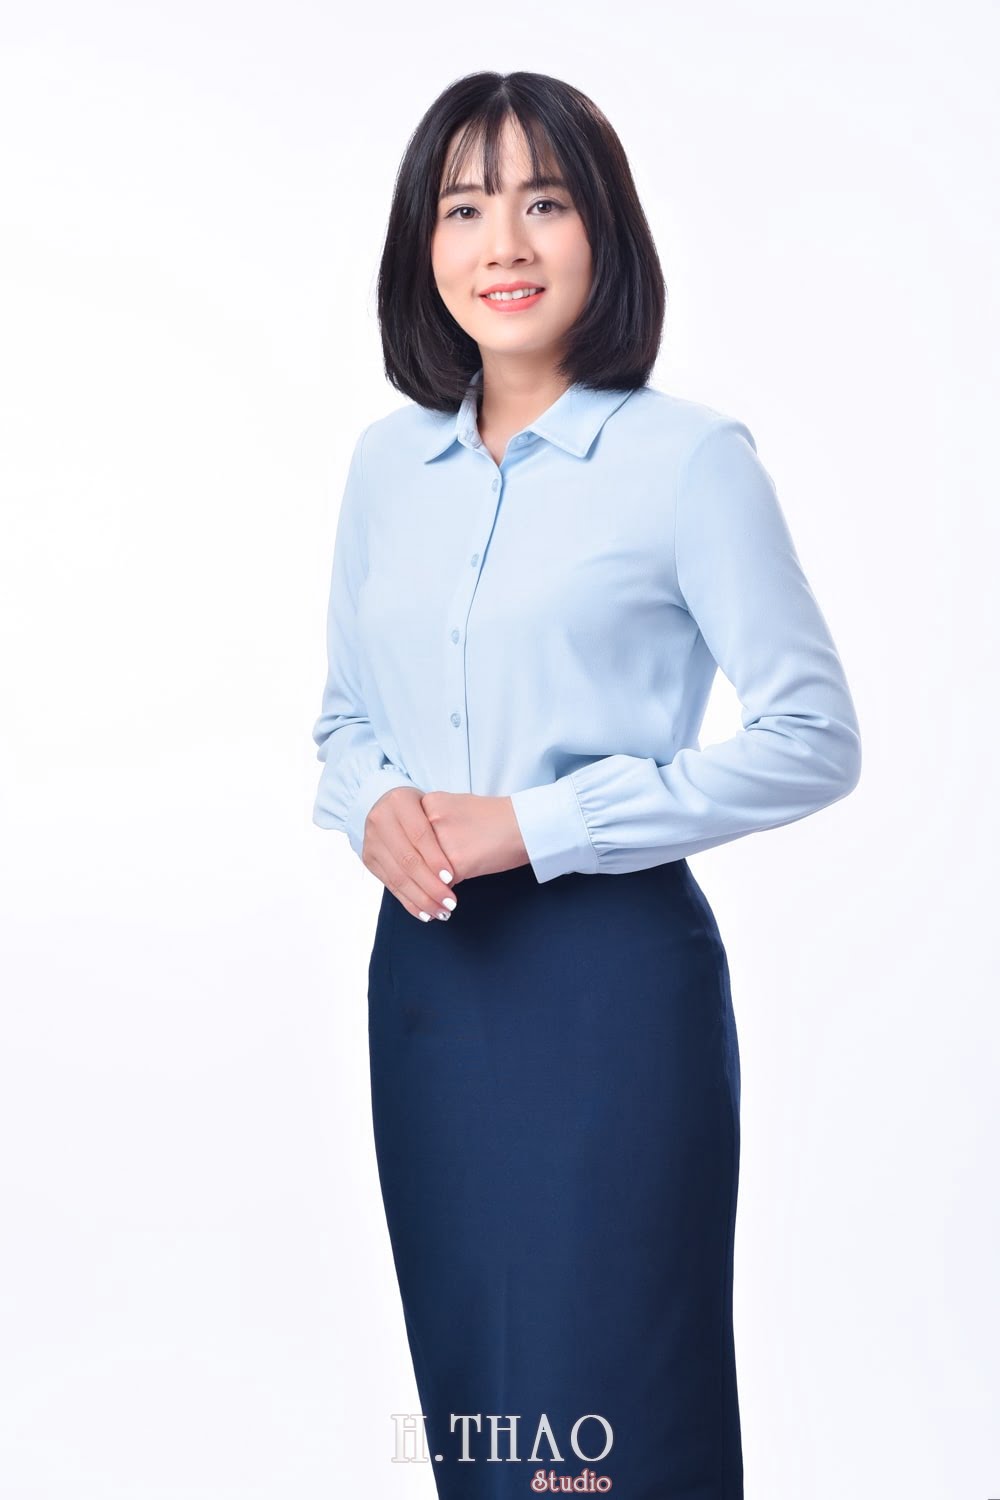 Anh profile  10 min - Tổng hợp ảnh profile nghề nghiệp bác sĩ, ngân hàng đẹp- HThao Studio